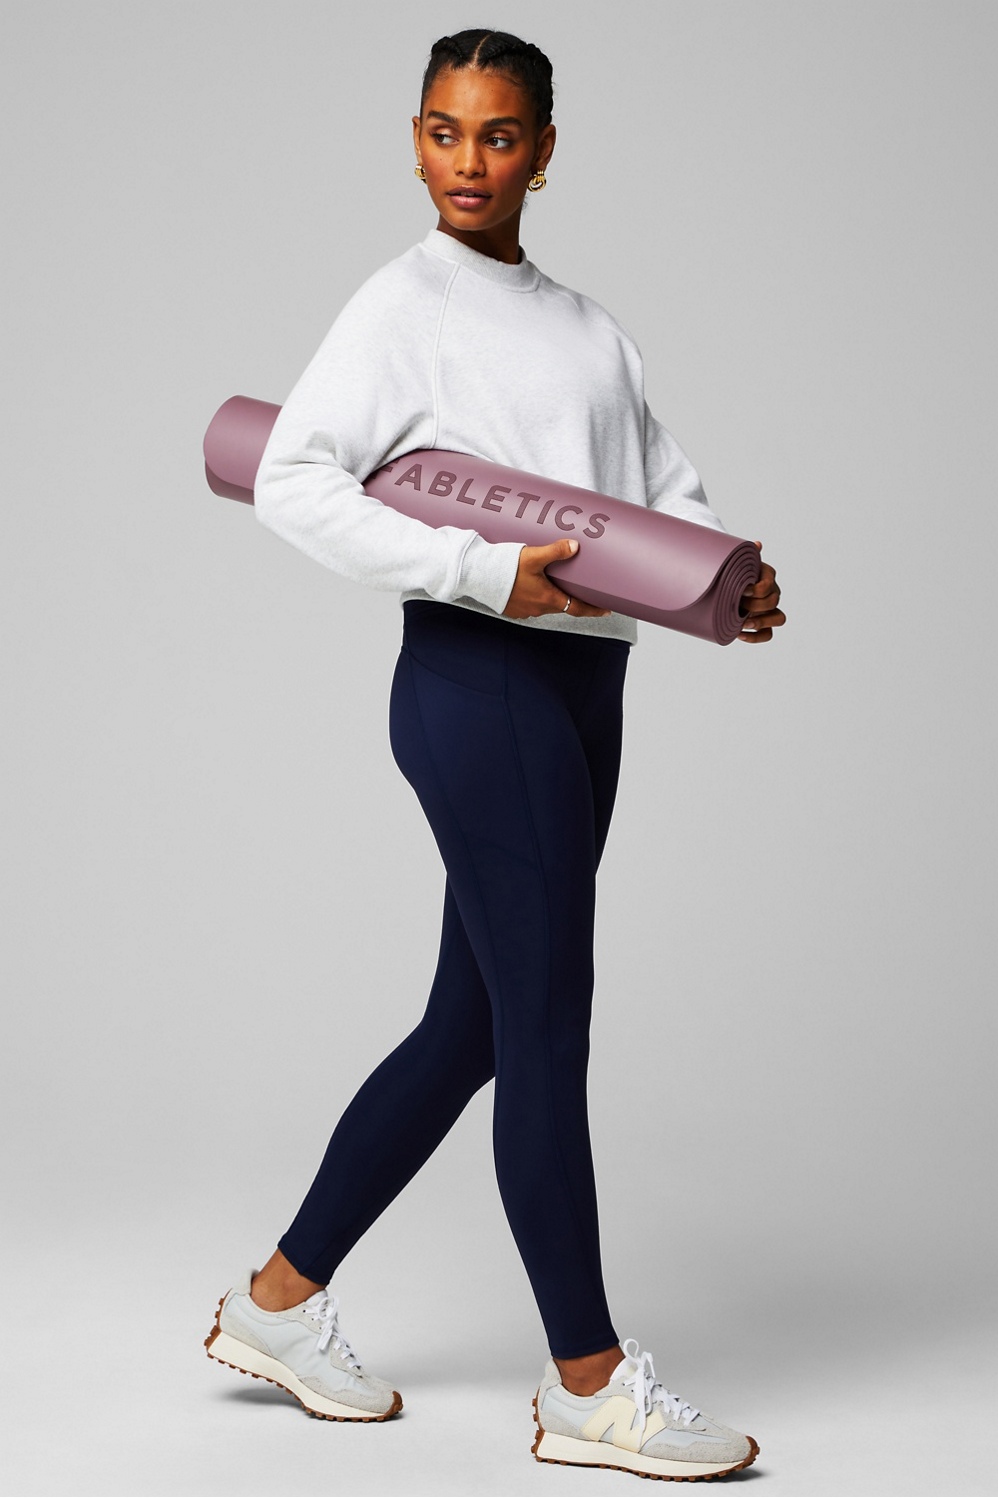 LuxeGrip™ Yoga Mat Purple – ASHTALUXE